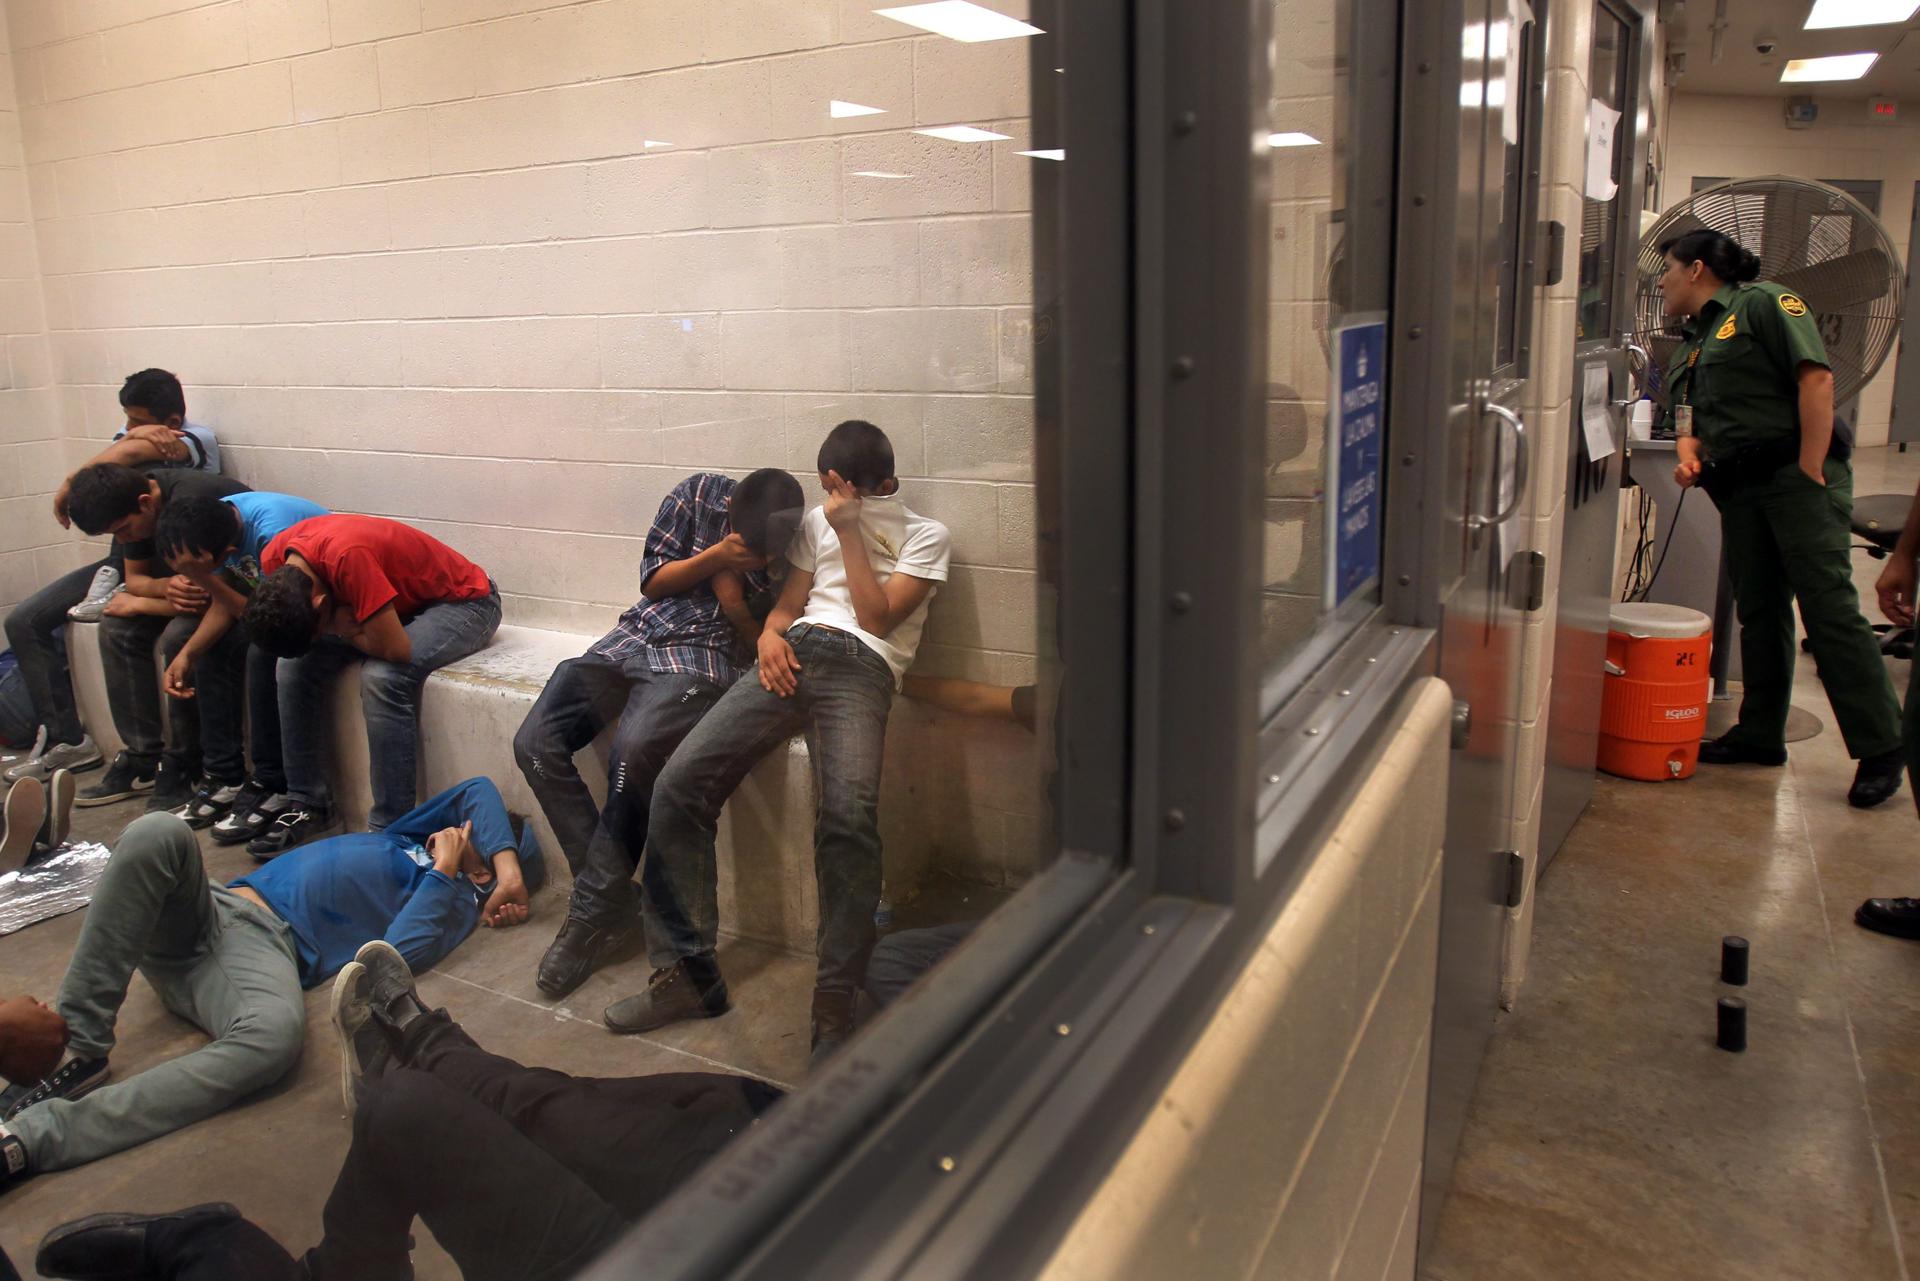 Vista de inmigrantes que han cruzado ilegalmente la frontera de EEUU. Imagen de archivo. EFE/Rick Loomis / POOL
